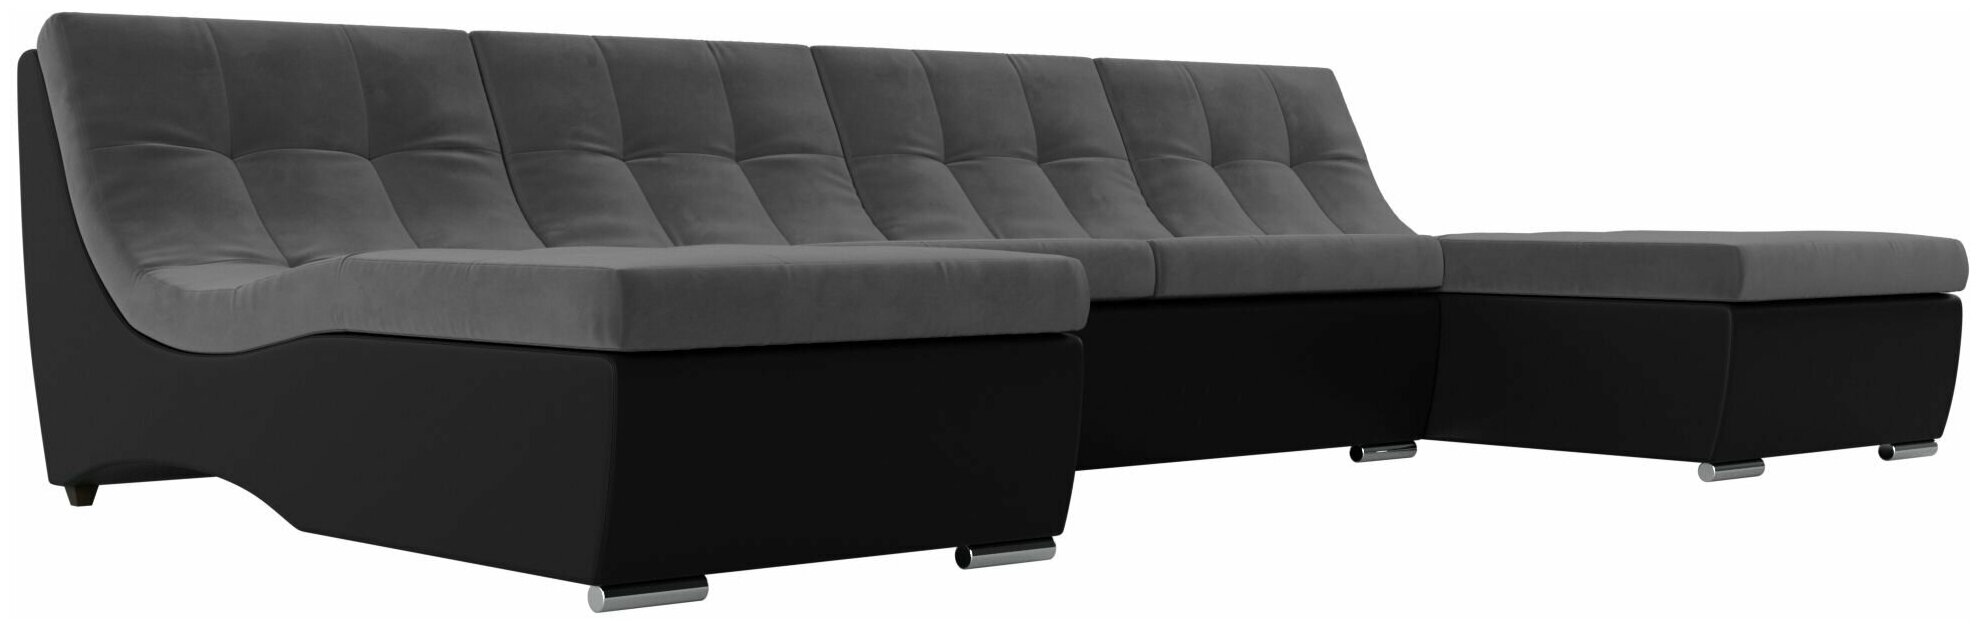 П-образный модульный диван Монреаль, Велюр серый, Экокожа черная